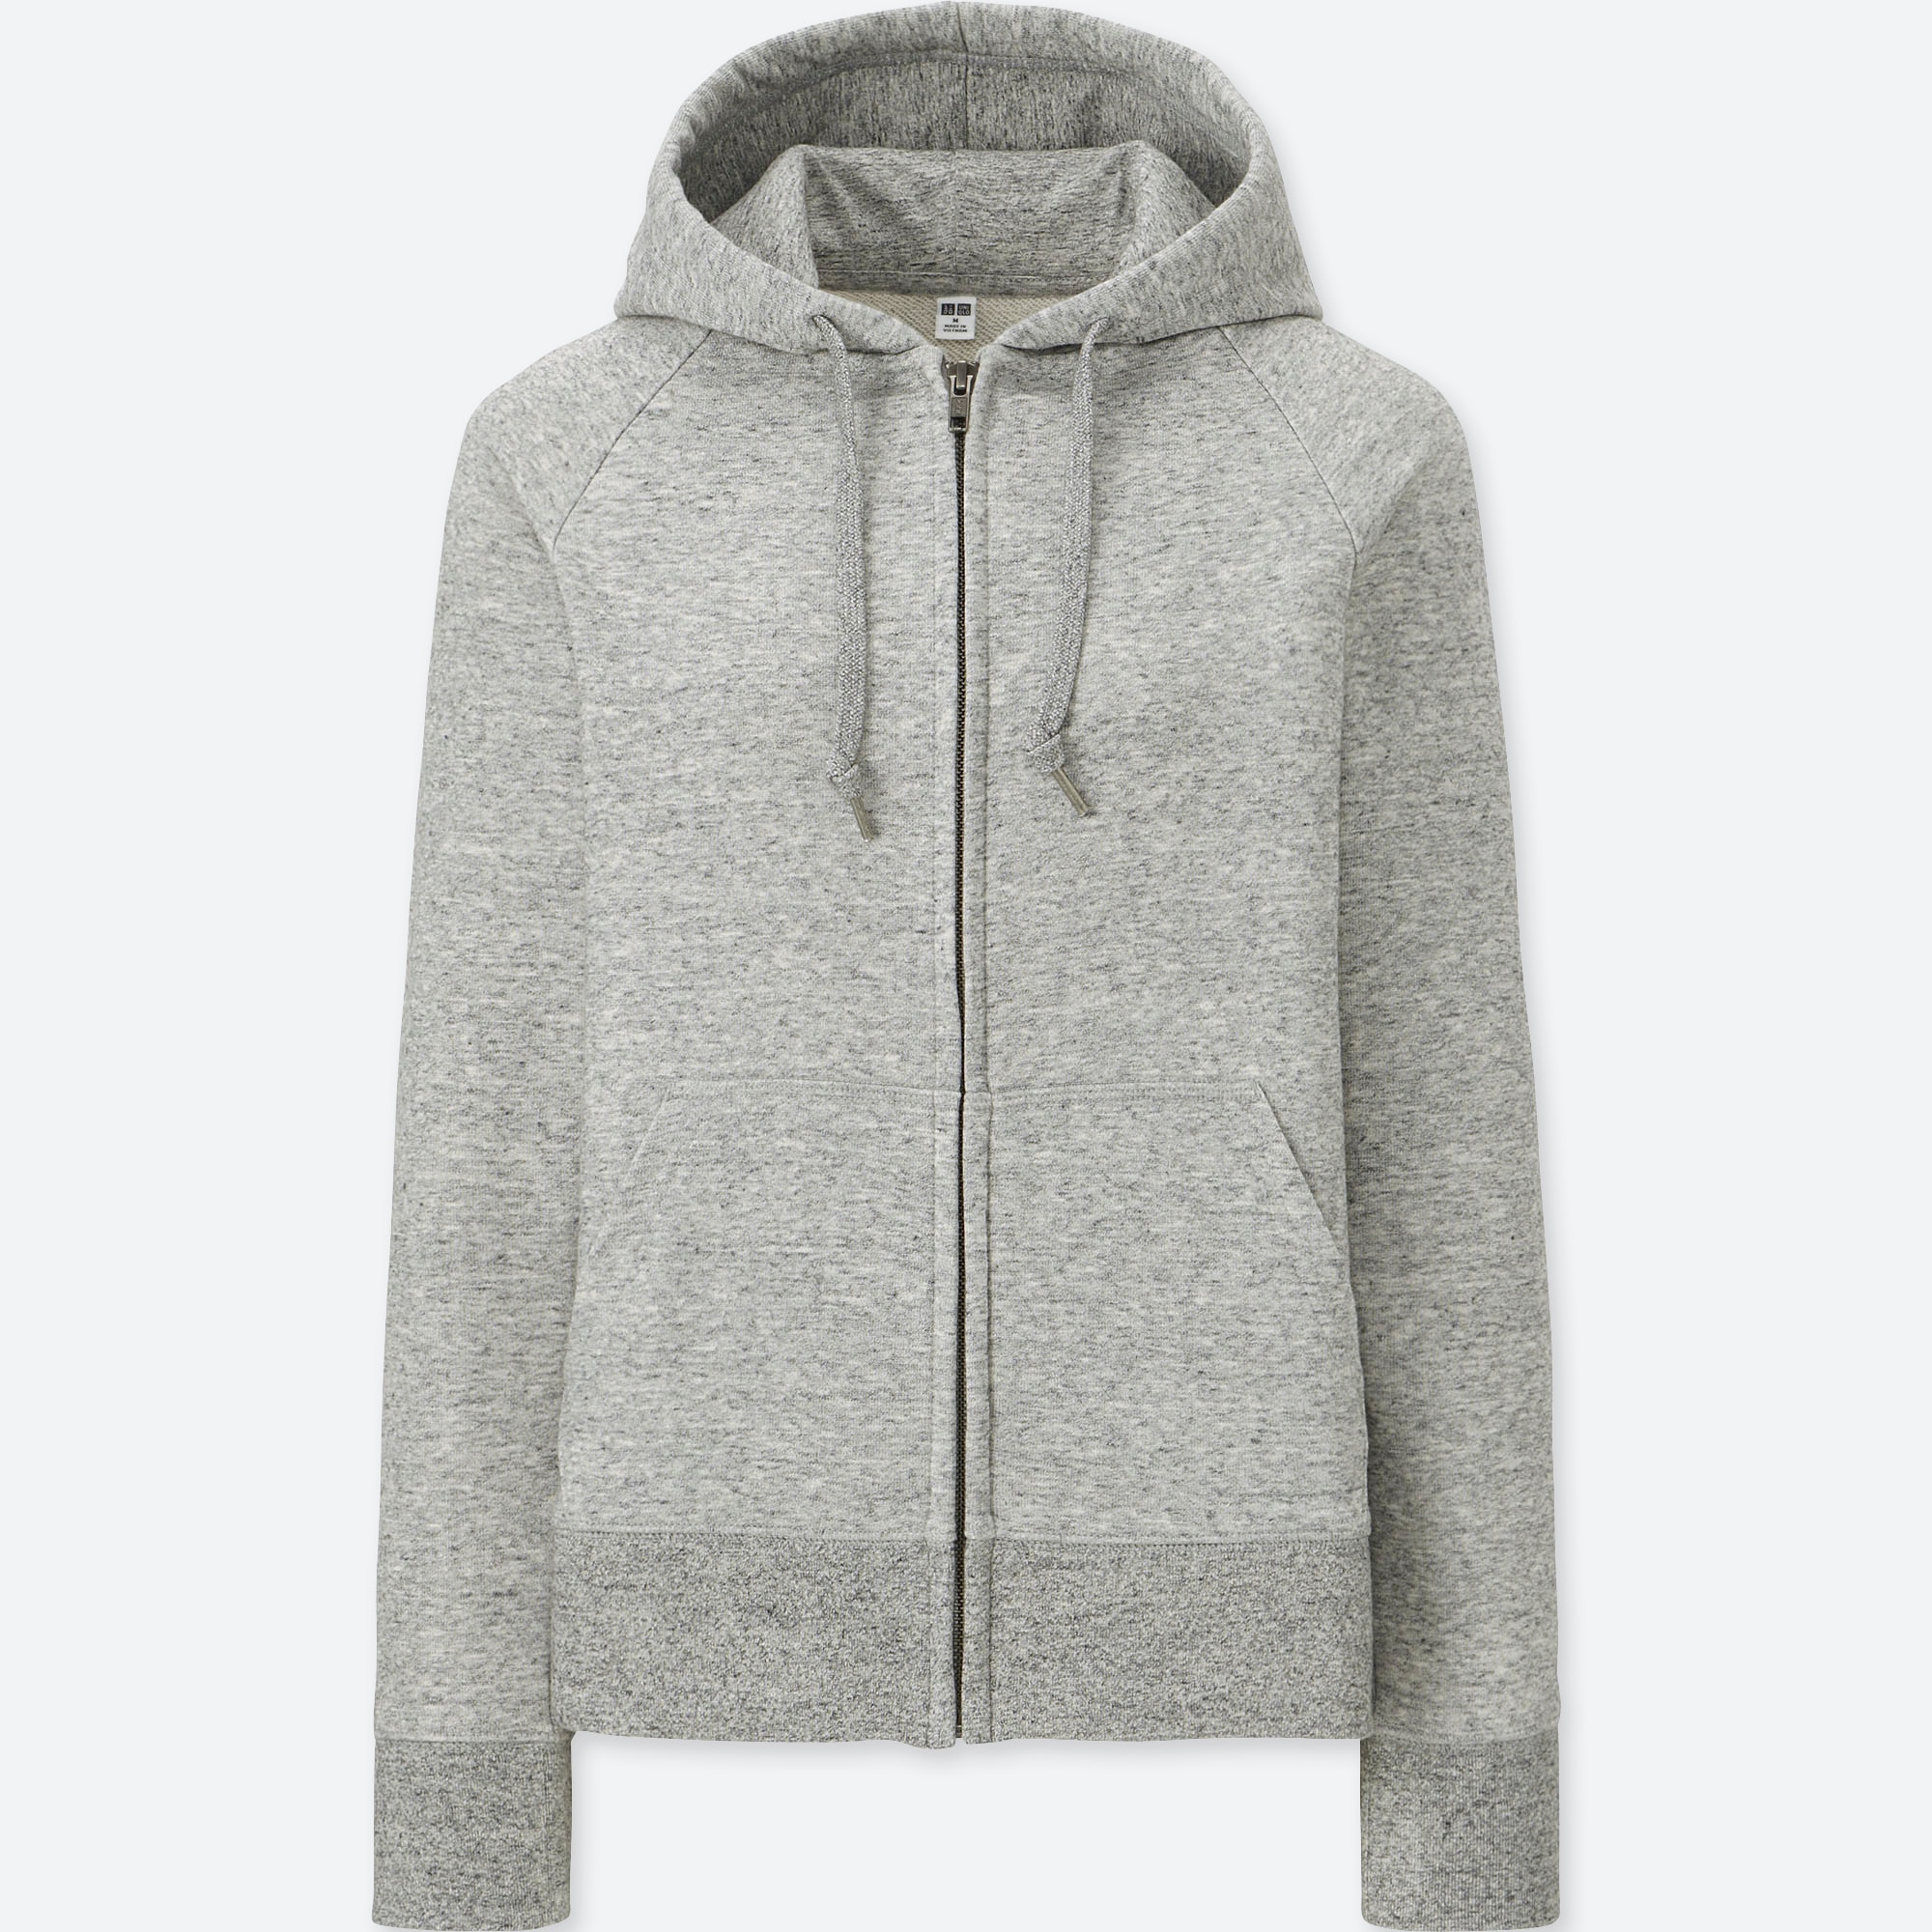 grey zip up hoodie womens